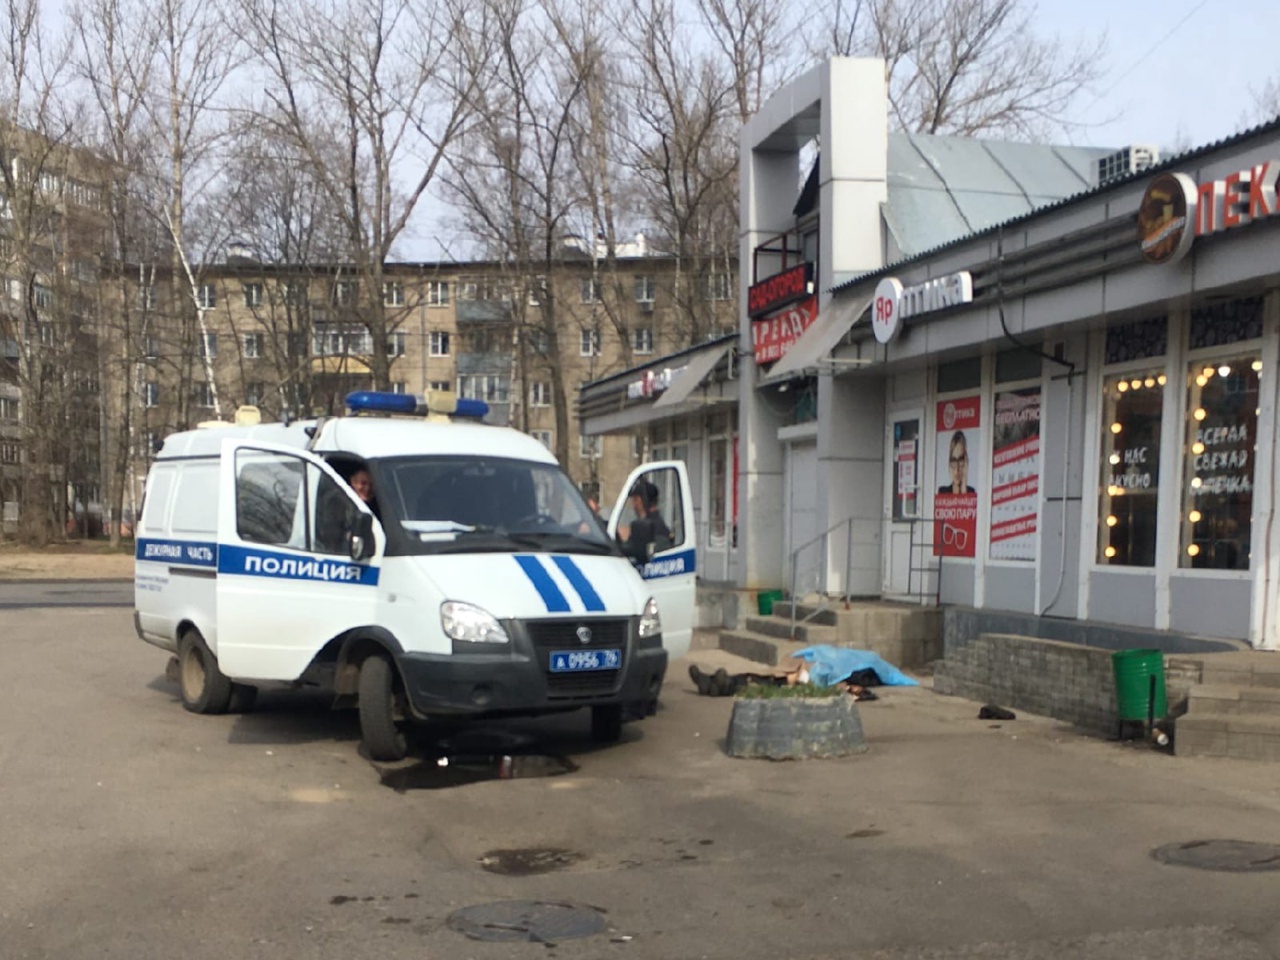 У магазина в Ярославле обнаружили труп полураздетого мужчины